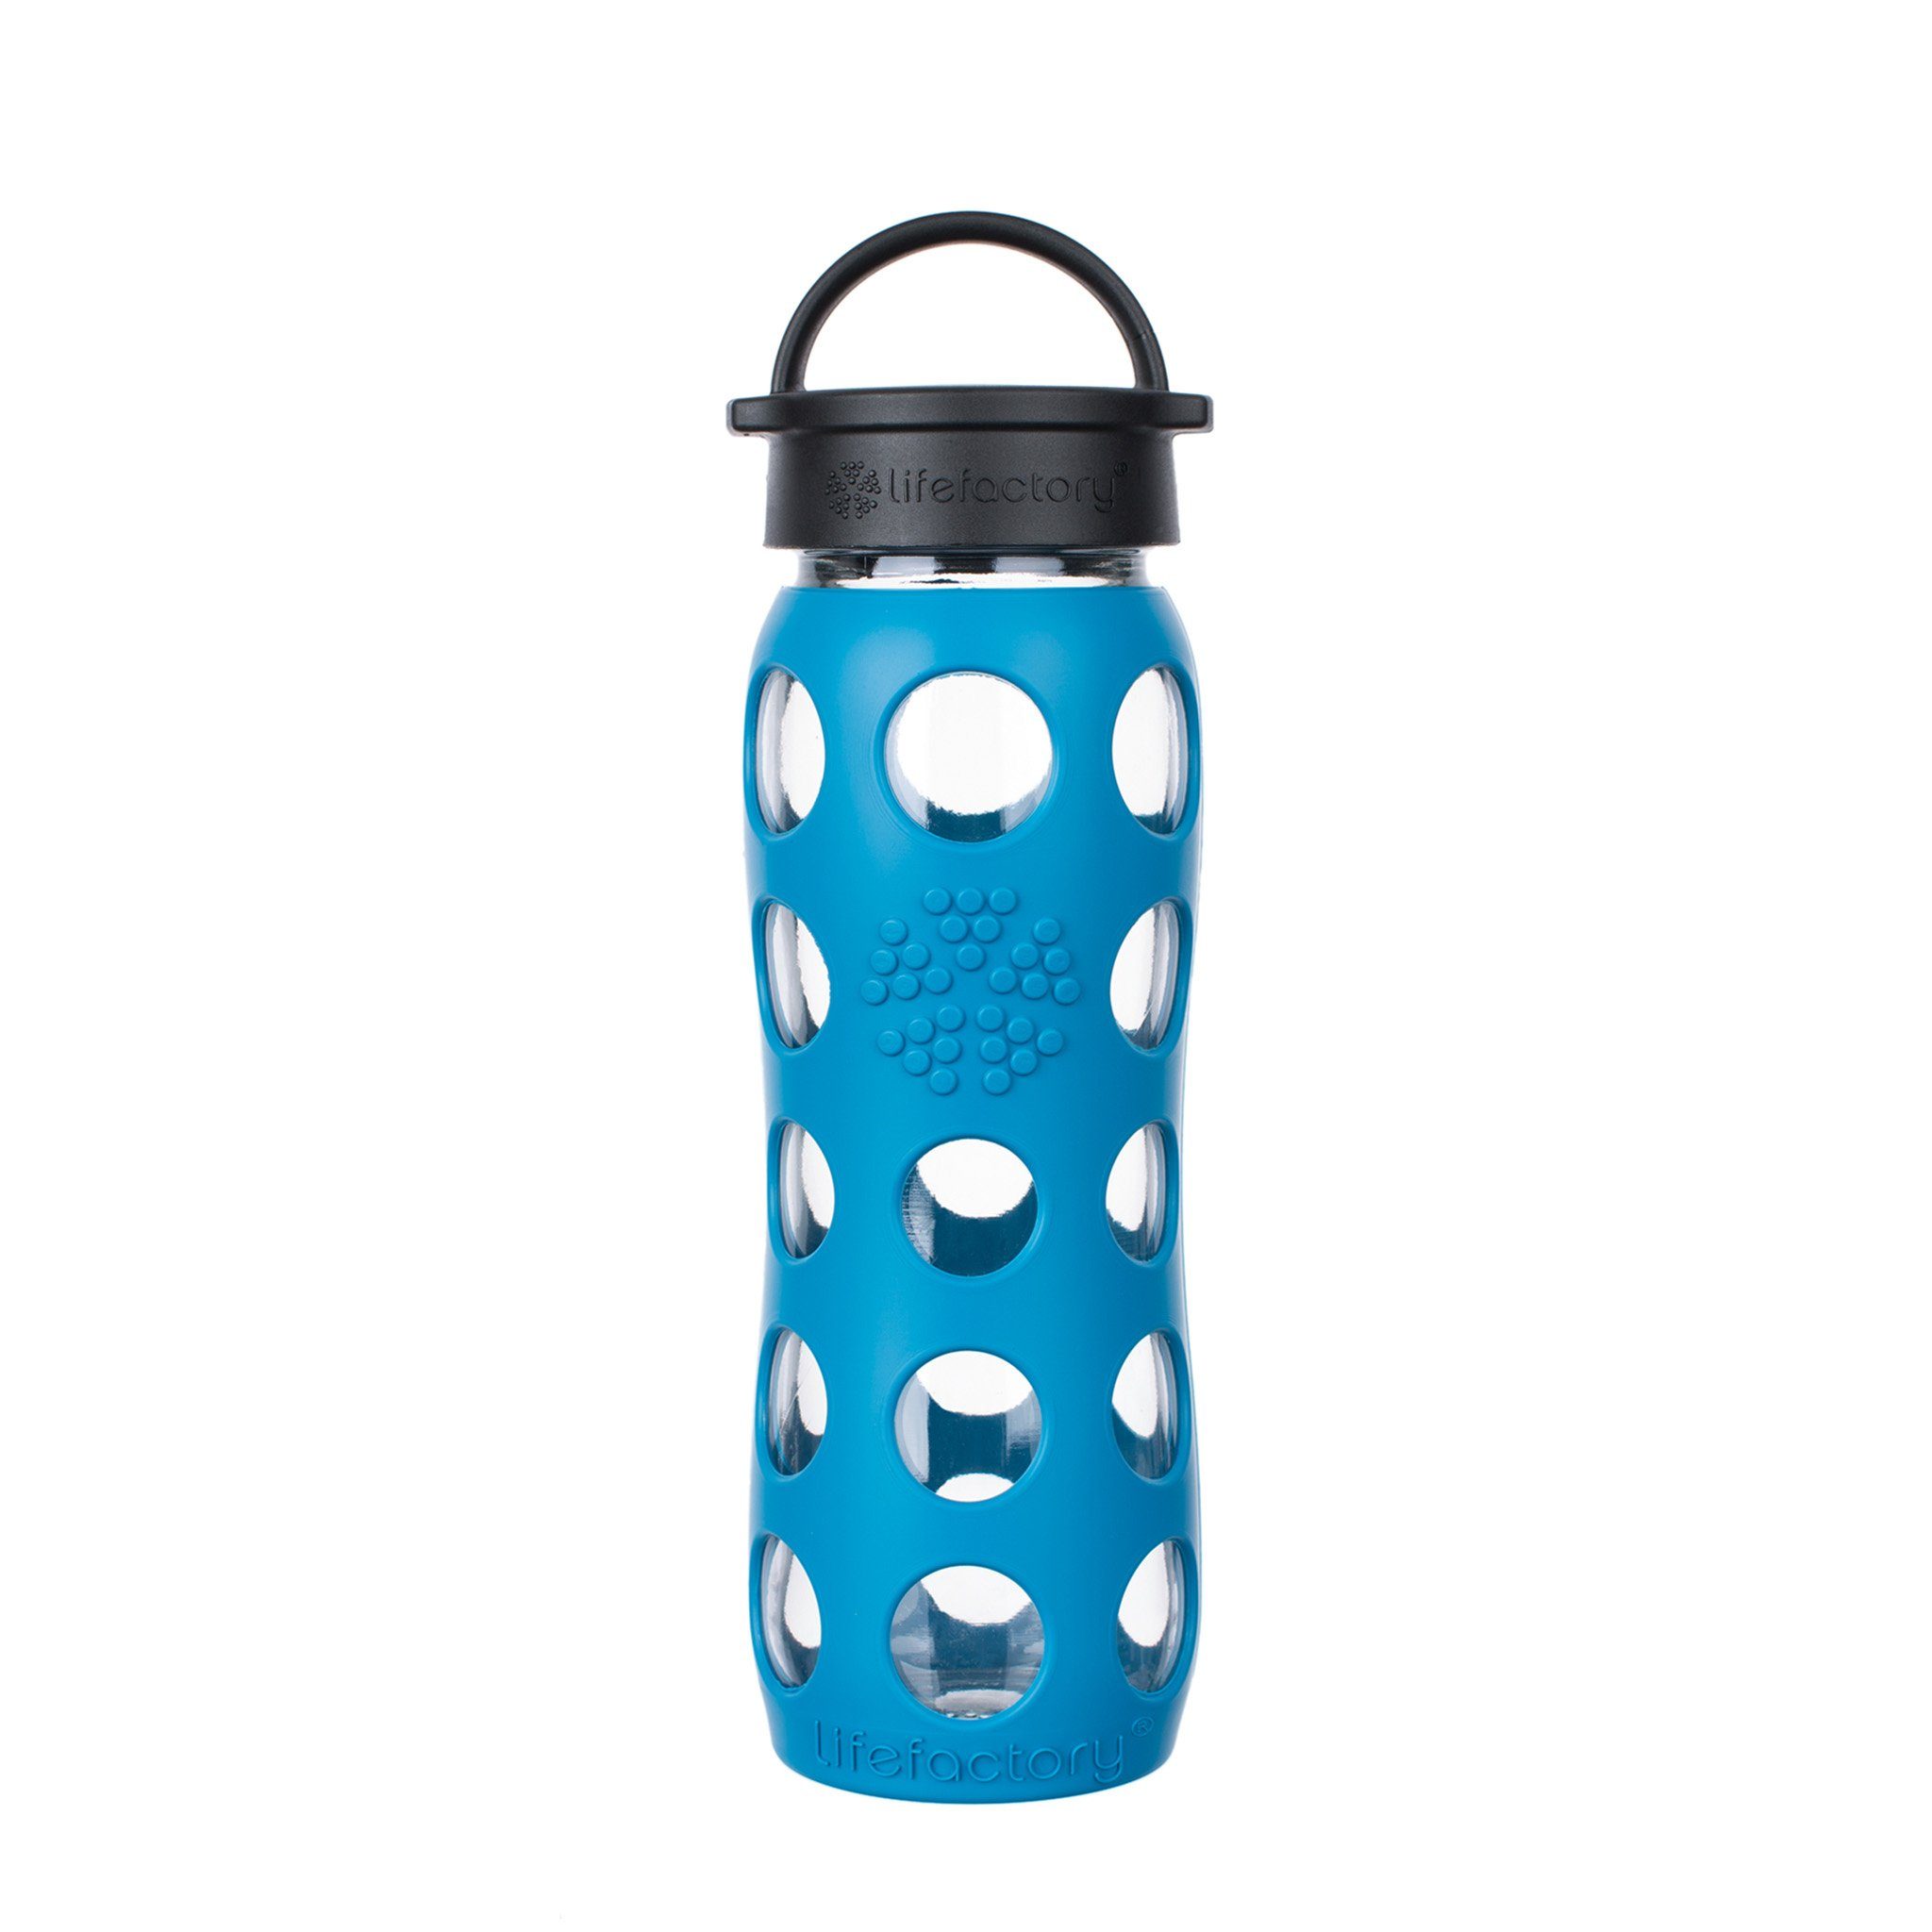 Lifefactory Babyflasche, Lifefactory Glas Flasche mit Silikonhülle und Schraubverschluss, 650ml Teal Lake